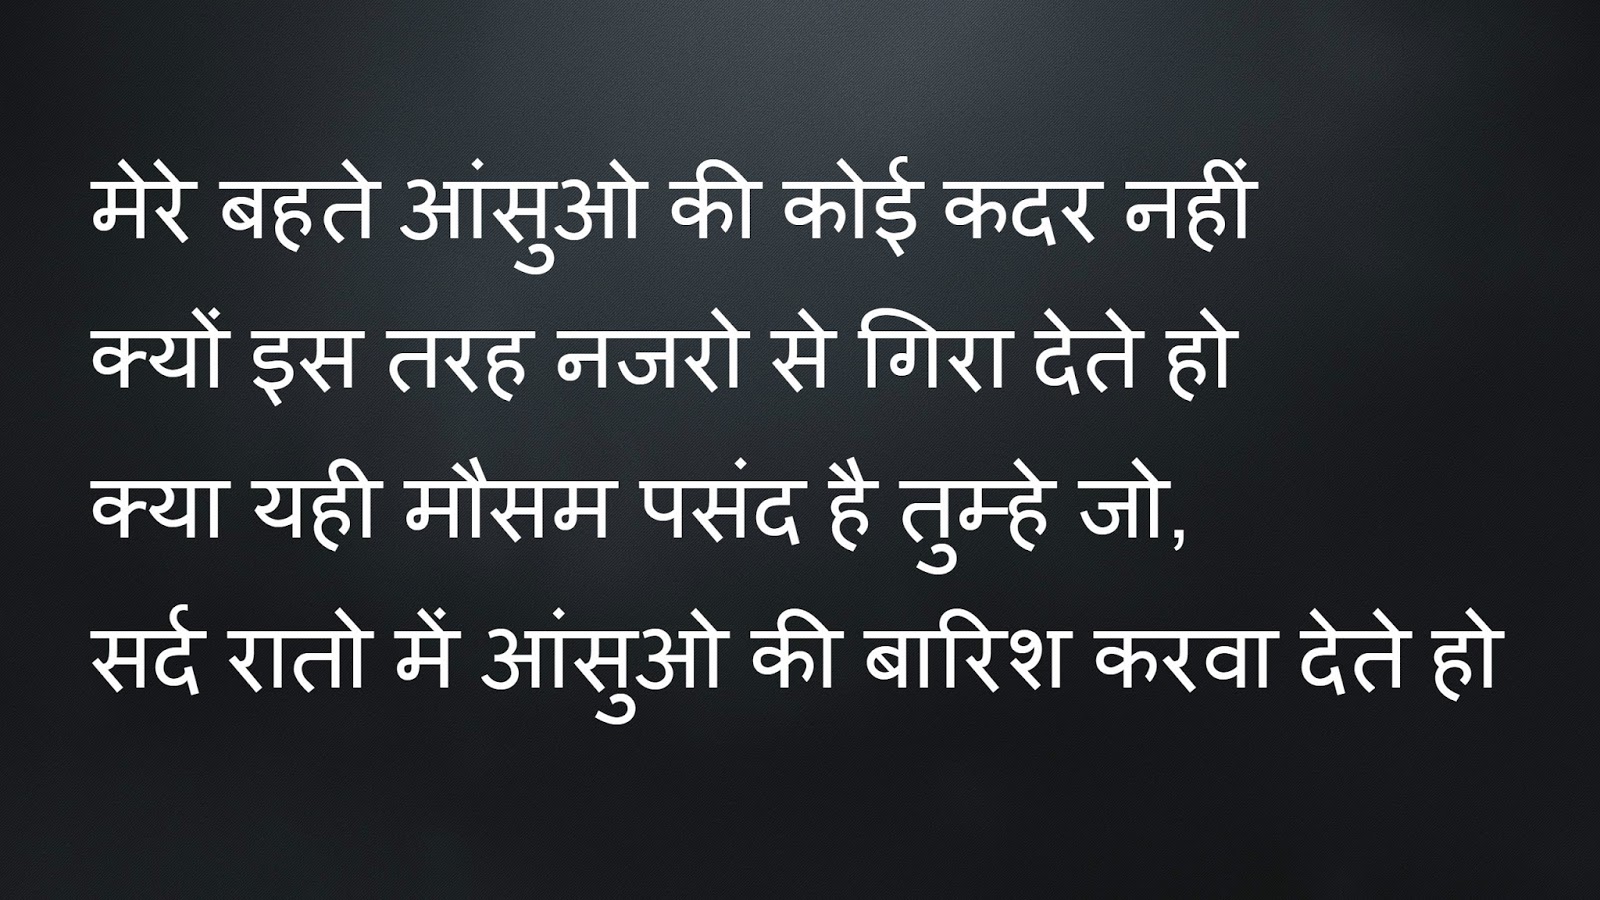 Very Very Sad Breakup Quotes Love shayari images hindi whatsapp status